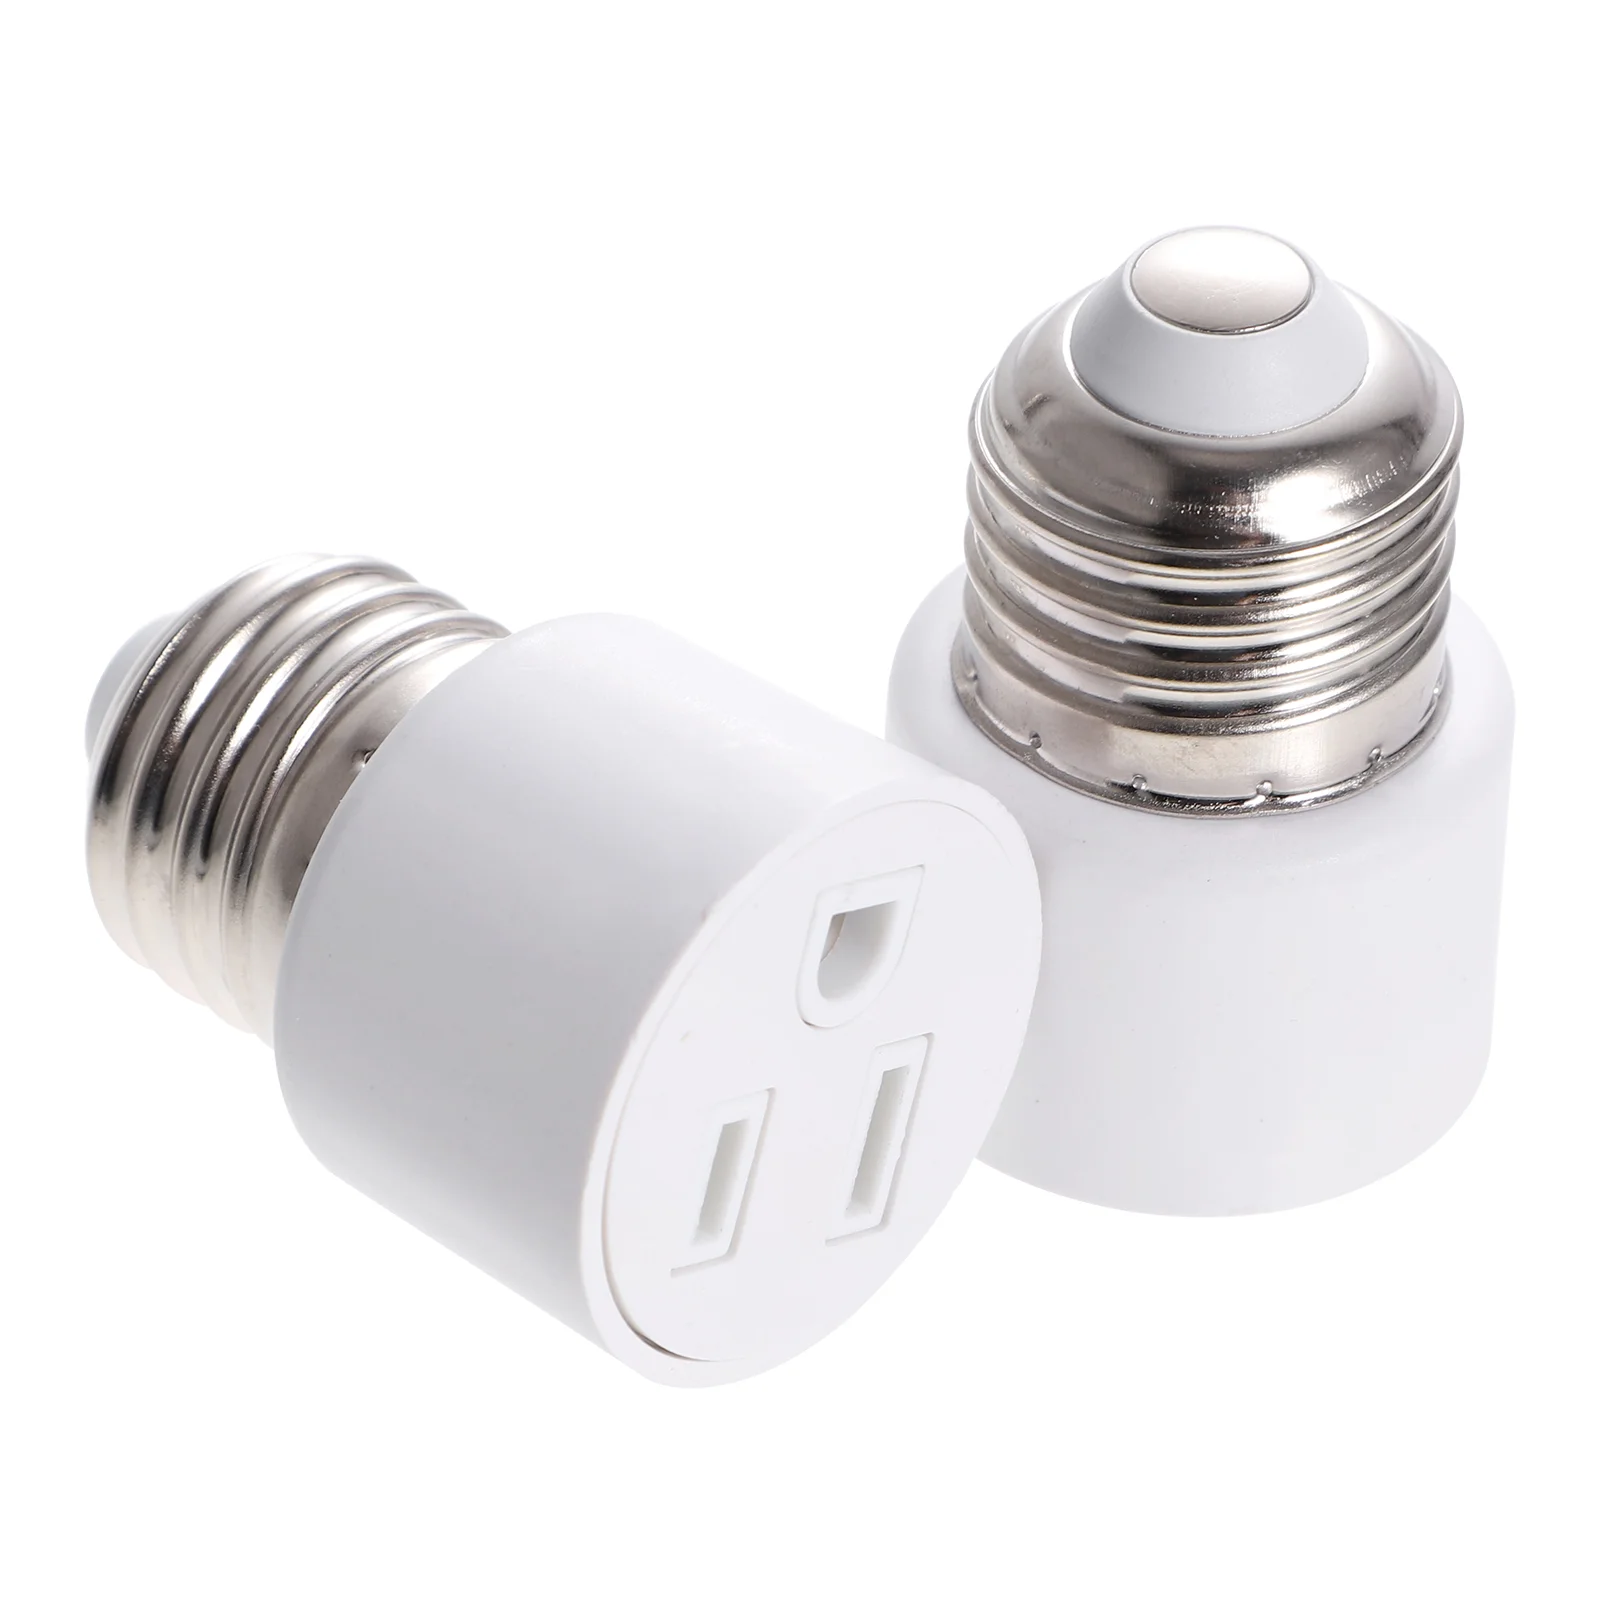 

2 Pcs E27 Converter Outlet Plug Base Plugs Light Bulb Socket Adapter Copper Lamp Holder E26 Splitter